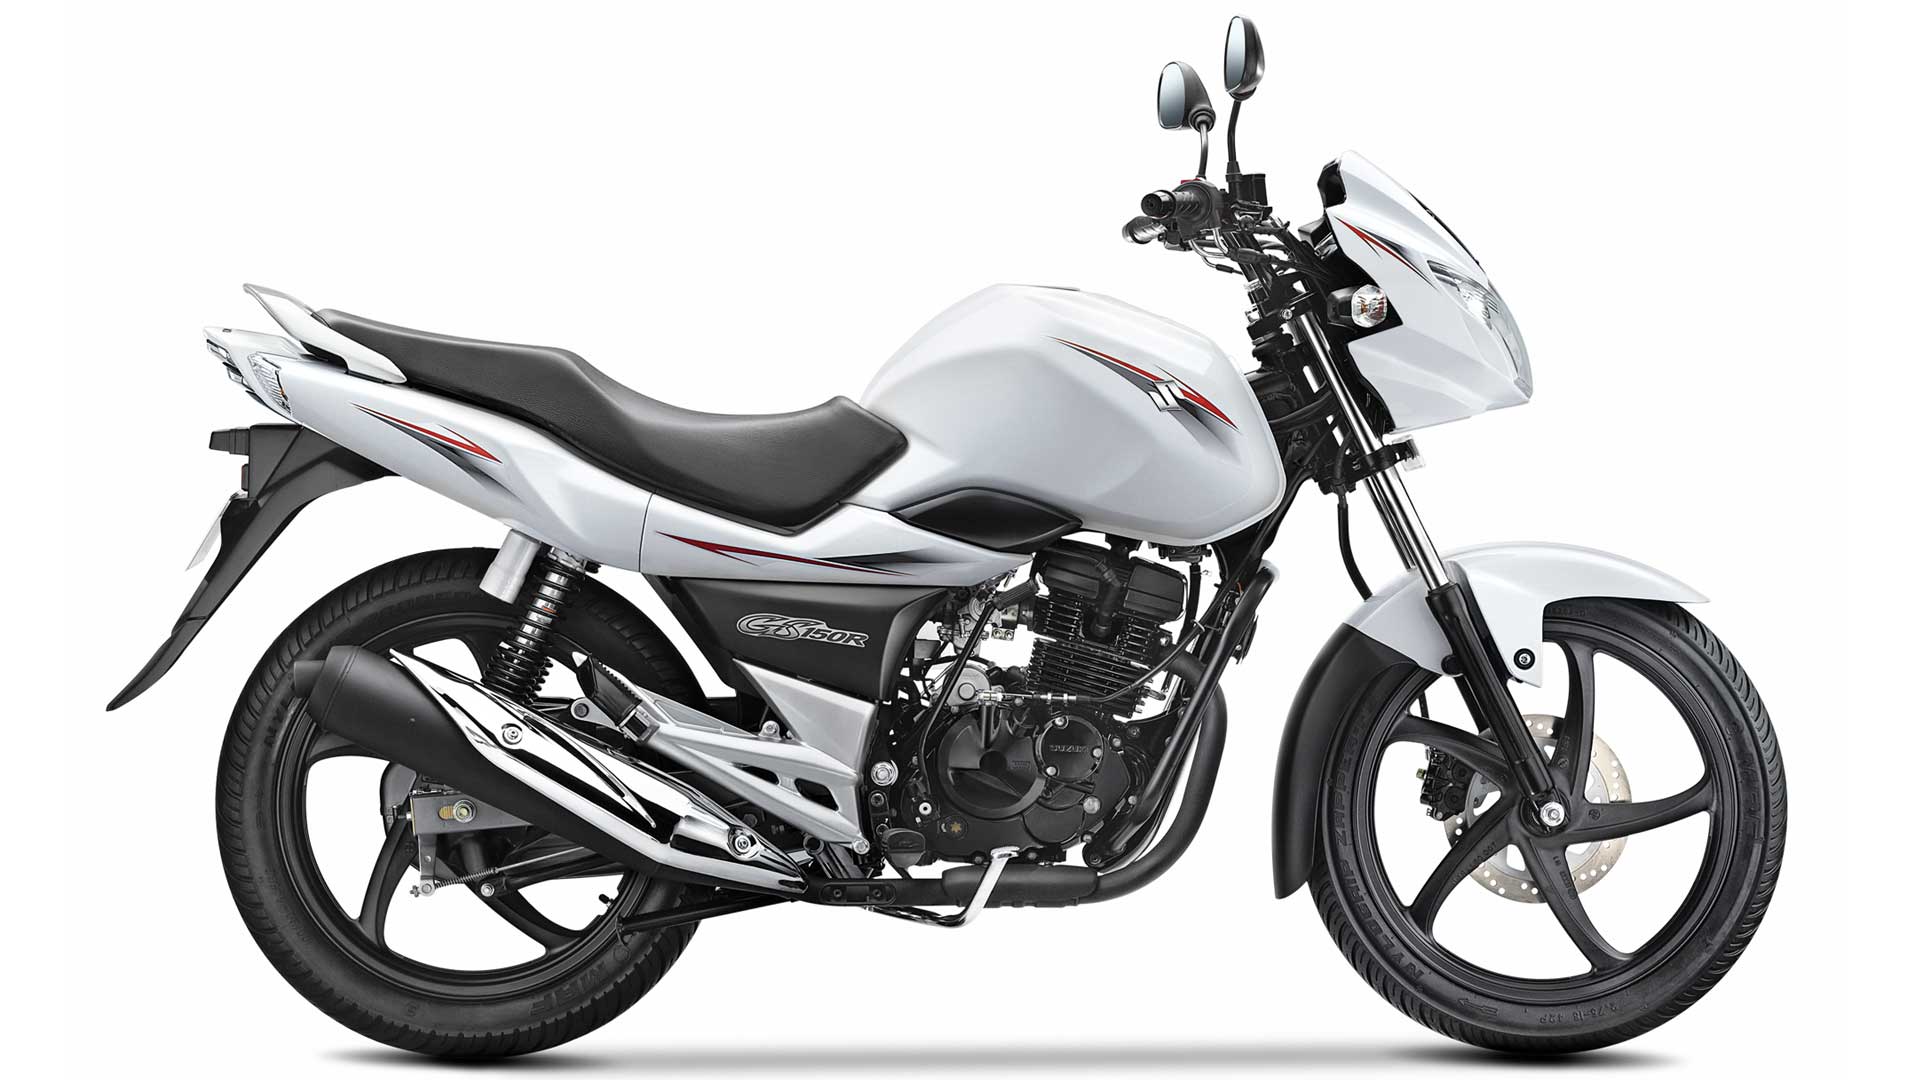 Suzuki GS150R- Top 10 Best Suzuki Bikes with Indian Price